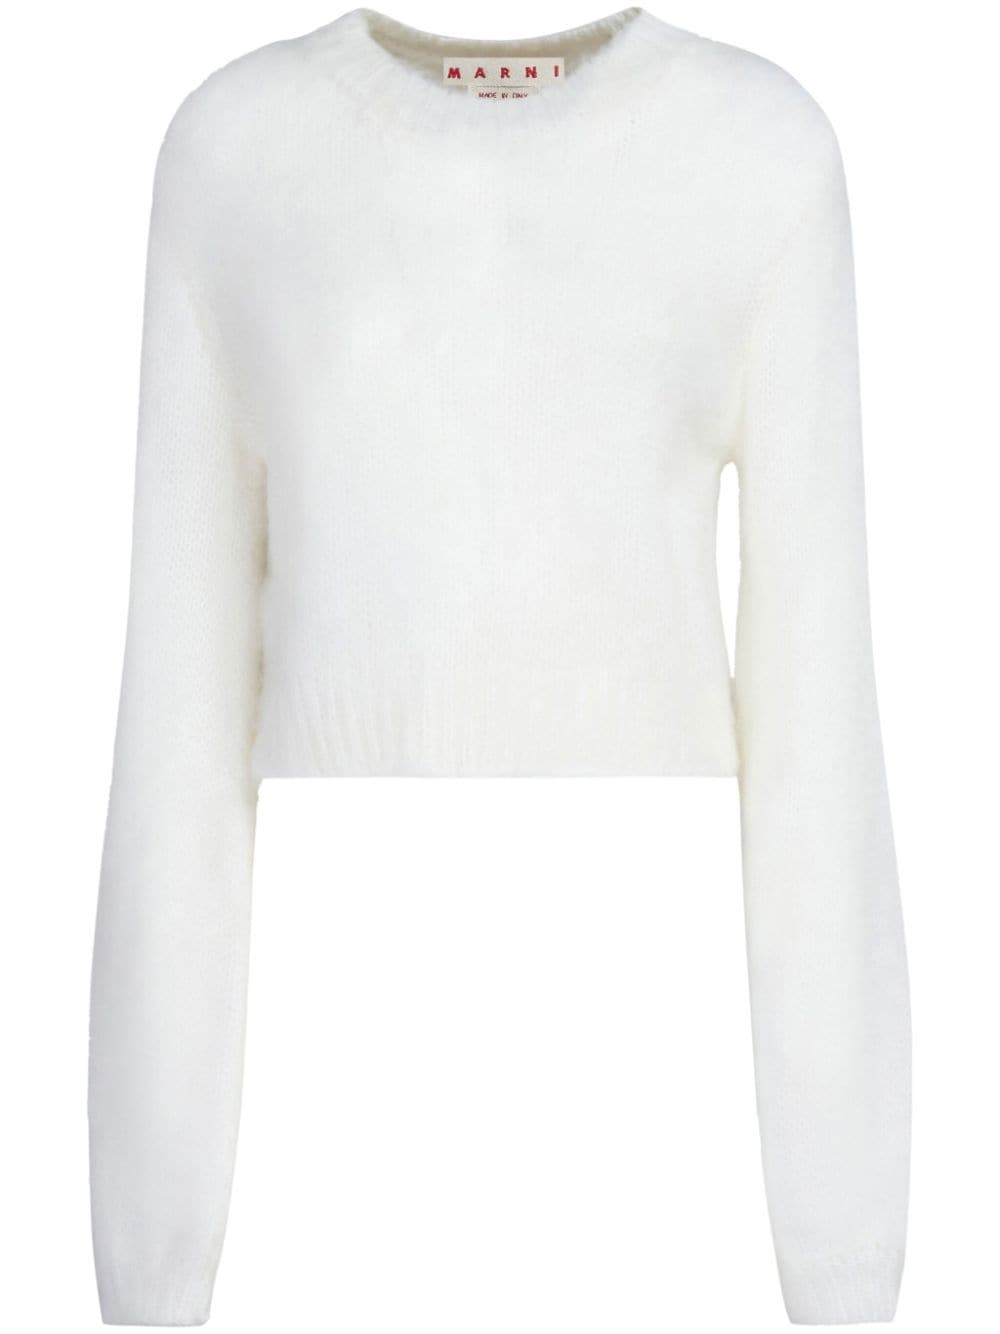 Marni Pullover mit rundem Ausschnitt - Weiß von Marni